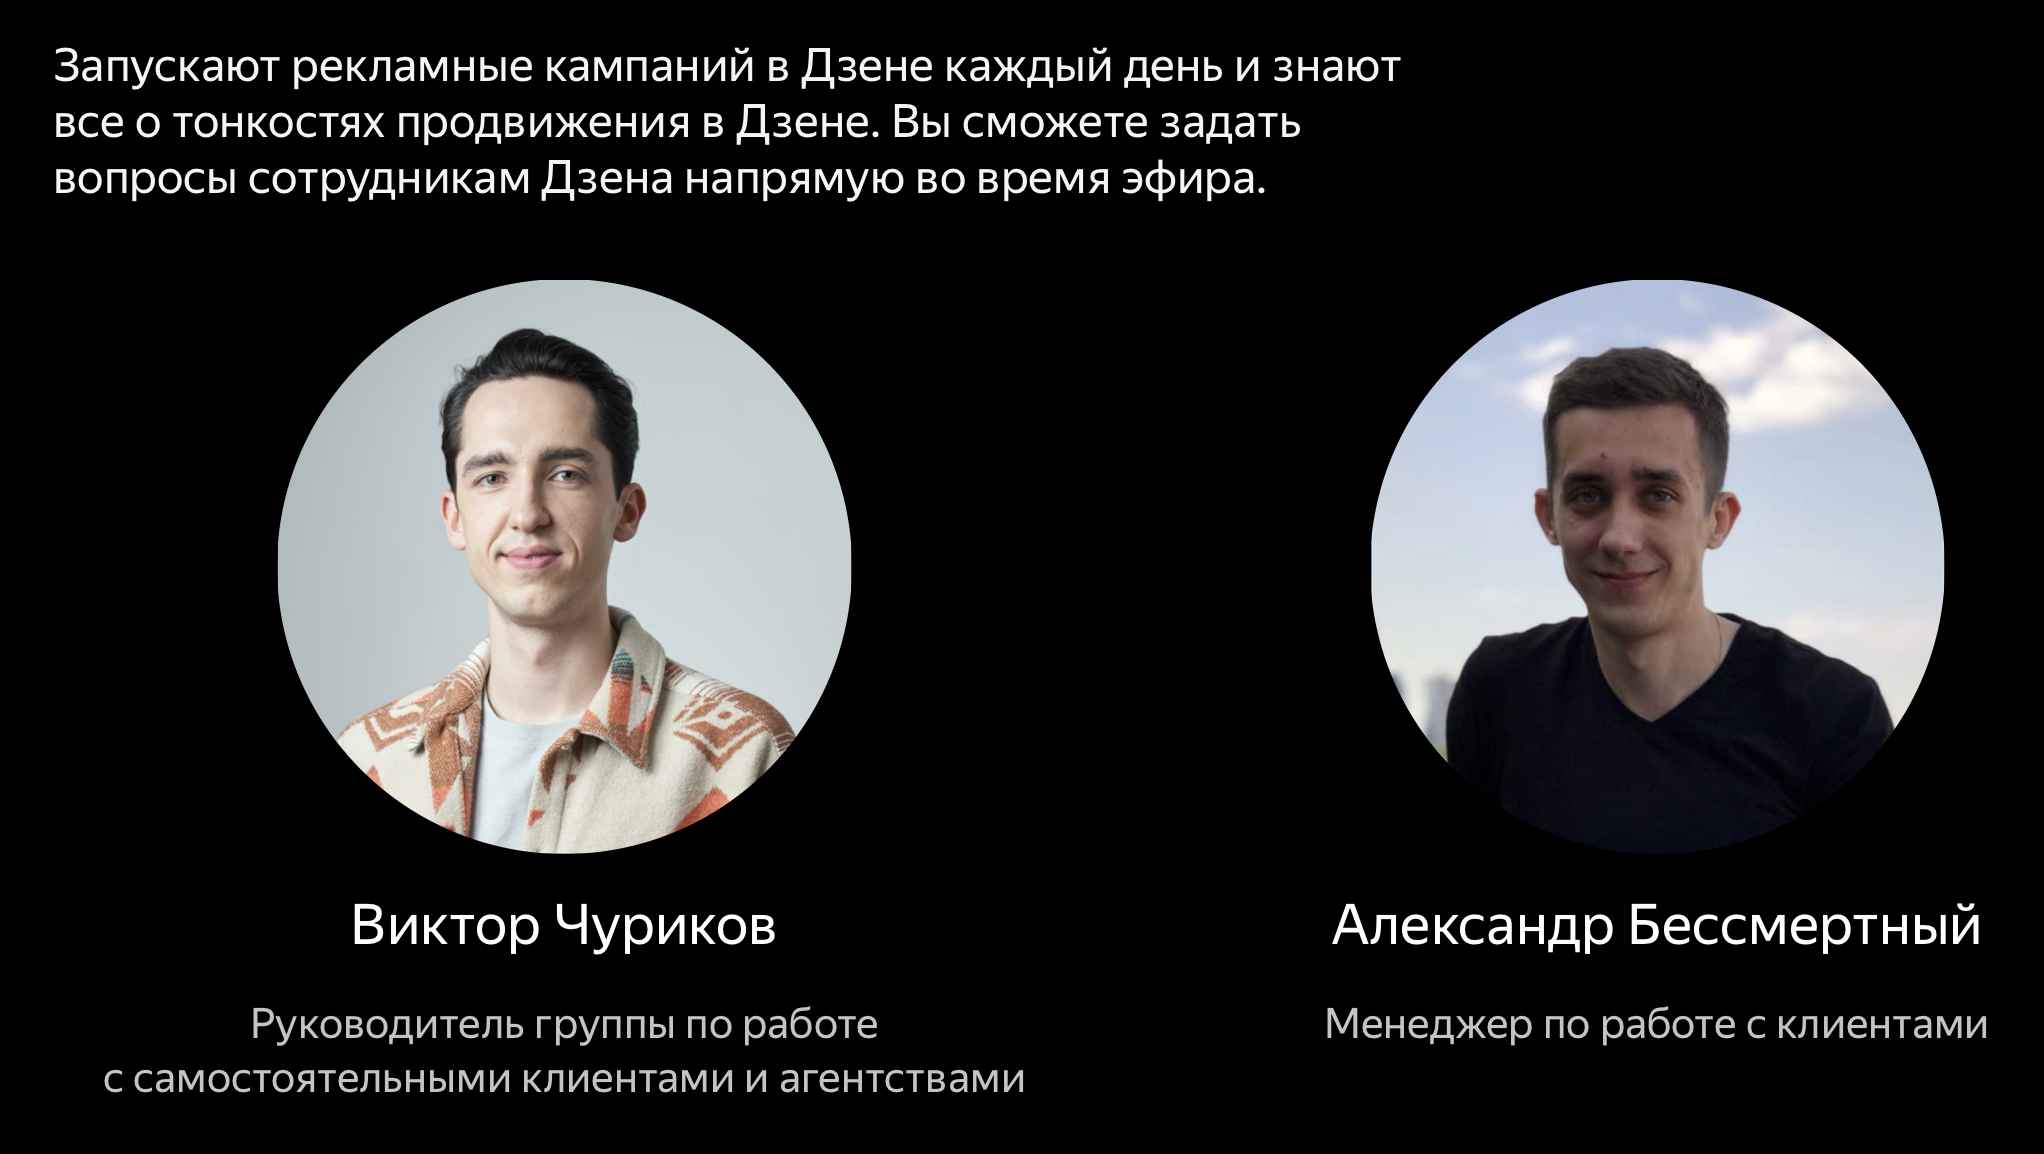 Яндекс.Дзен проведет серию вебинаров «Легкий и эффективный старт»